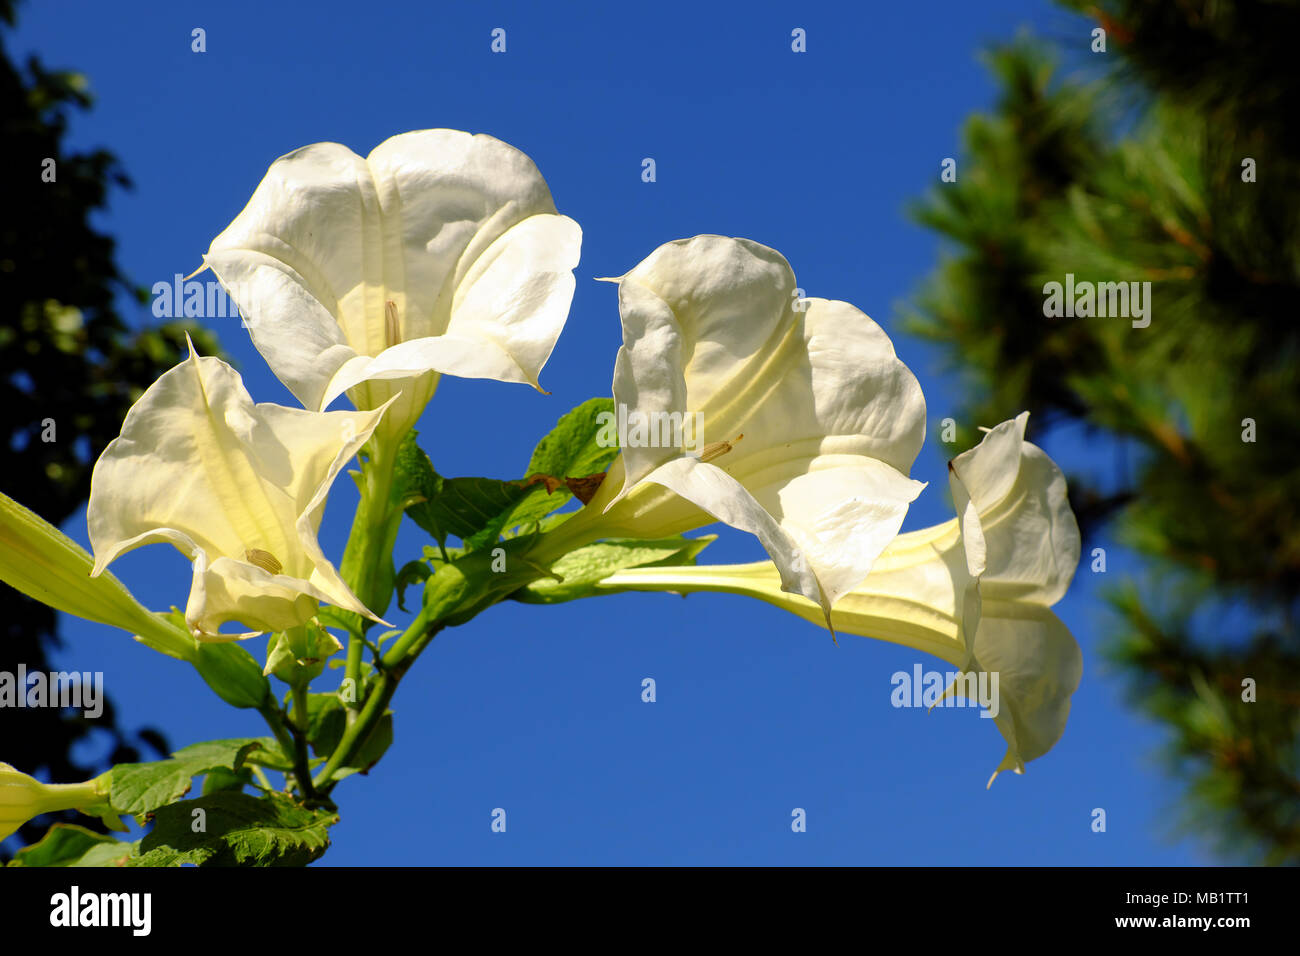 Flor de lirio blanco, un árbol urbano popular como planta decorativa con forma de trompeta en la ciudad de Da Lat, esta planta muy tóxicos, tóxicos y peligrosos, blanco B Foto de stock